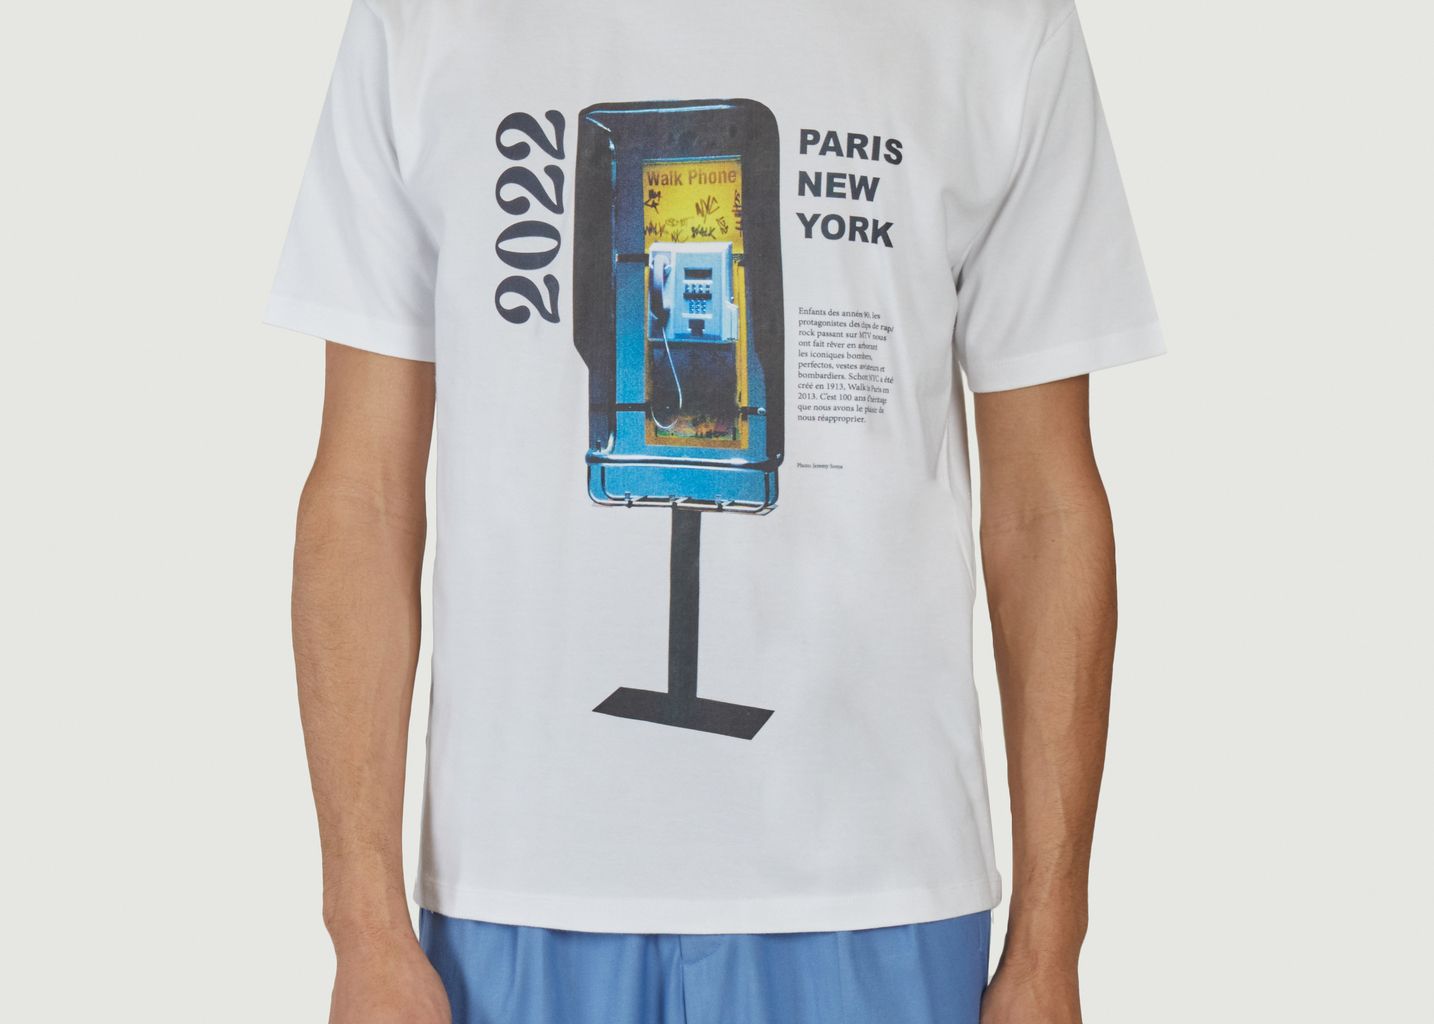 Le t-shirt héritage imprimé Paris New York - Walk in Paris